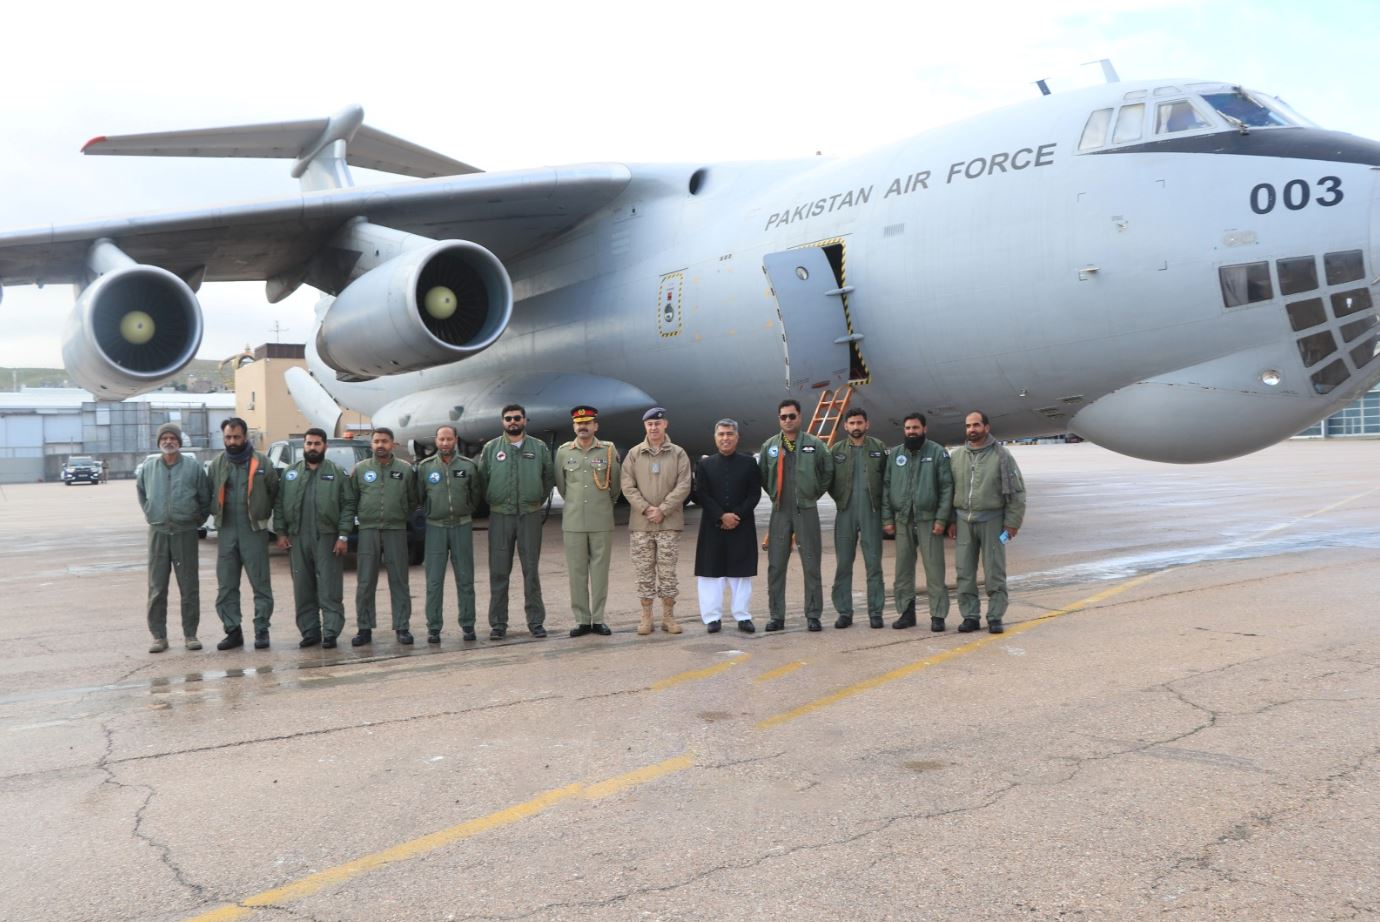 وصول طائرة مساعدات باكستانية إلى مطار ماركا العسكري - صور 